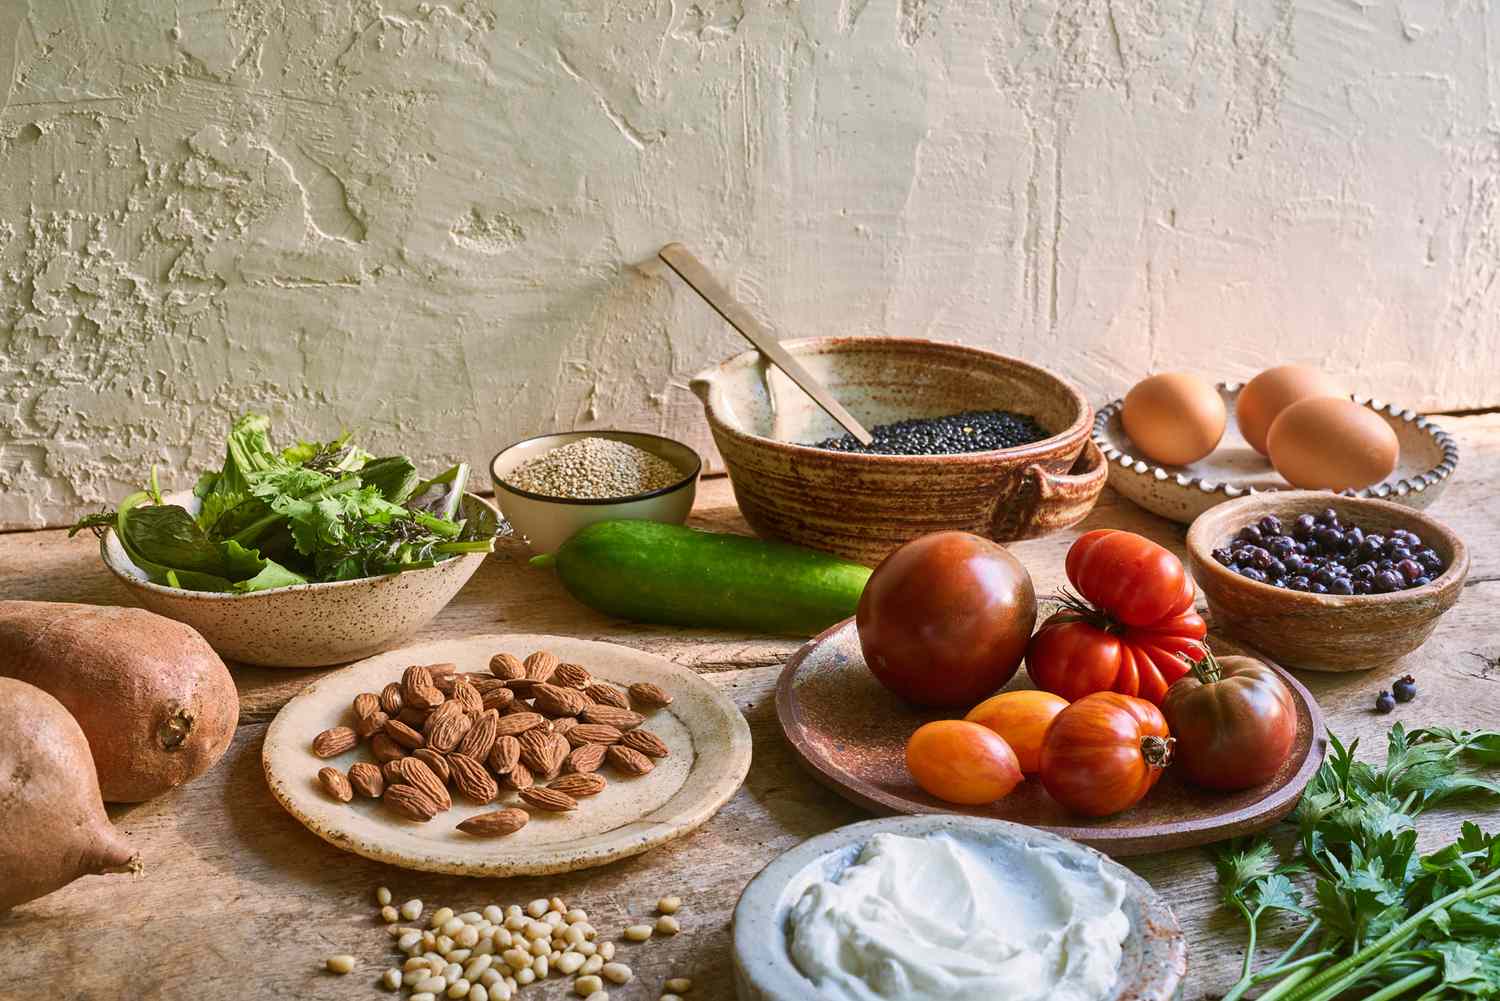 30 Day Mediterranean Diet Meal Plan 1200 Calories